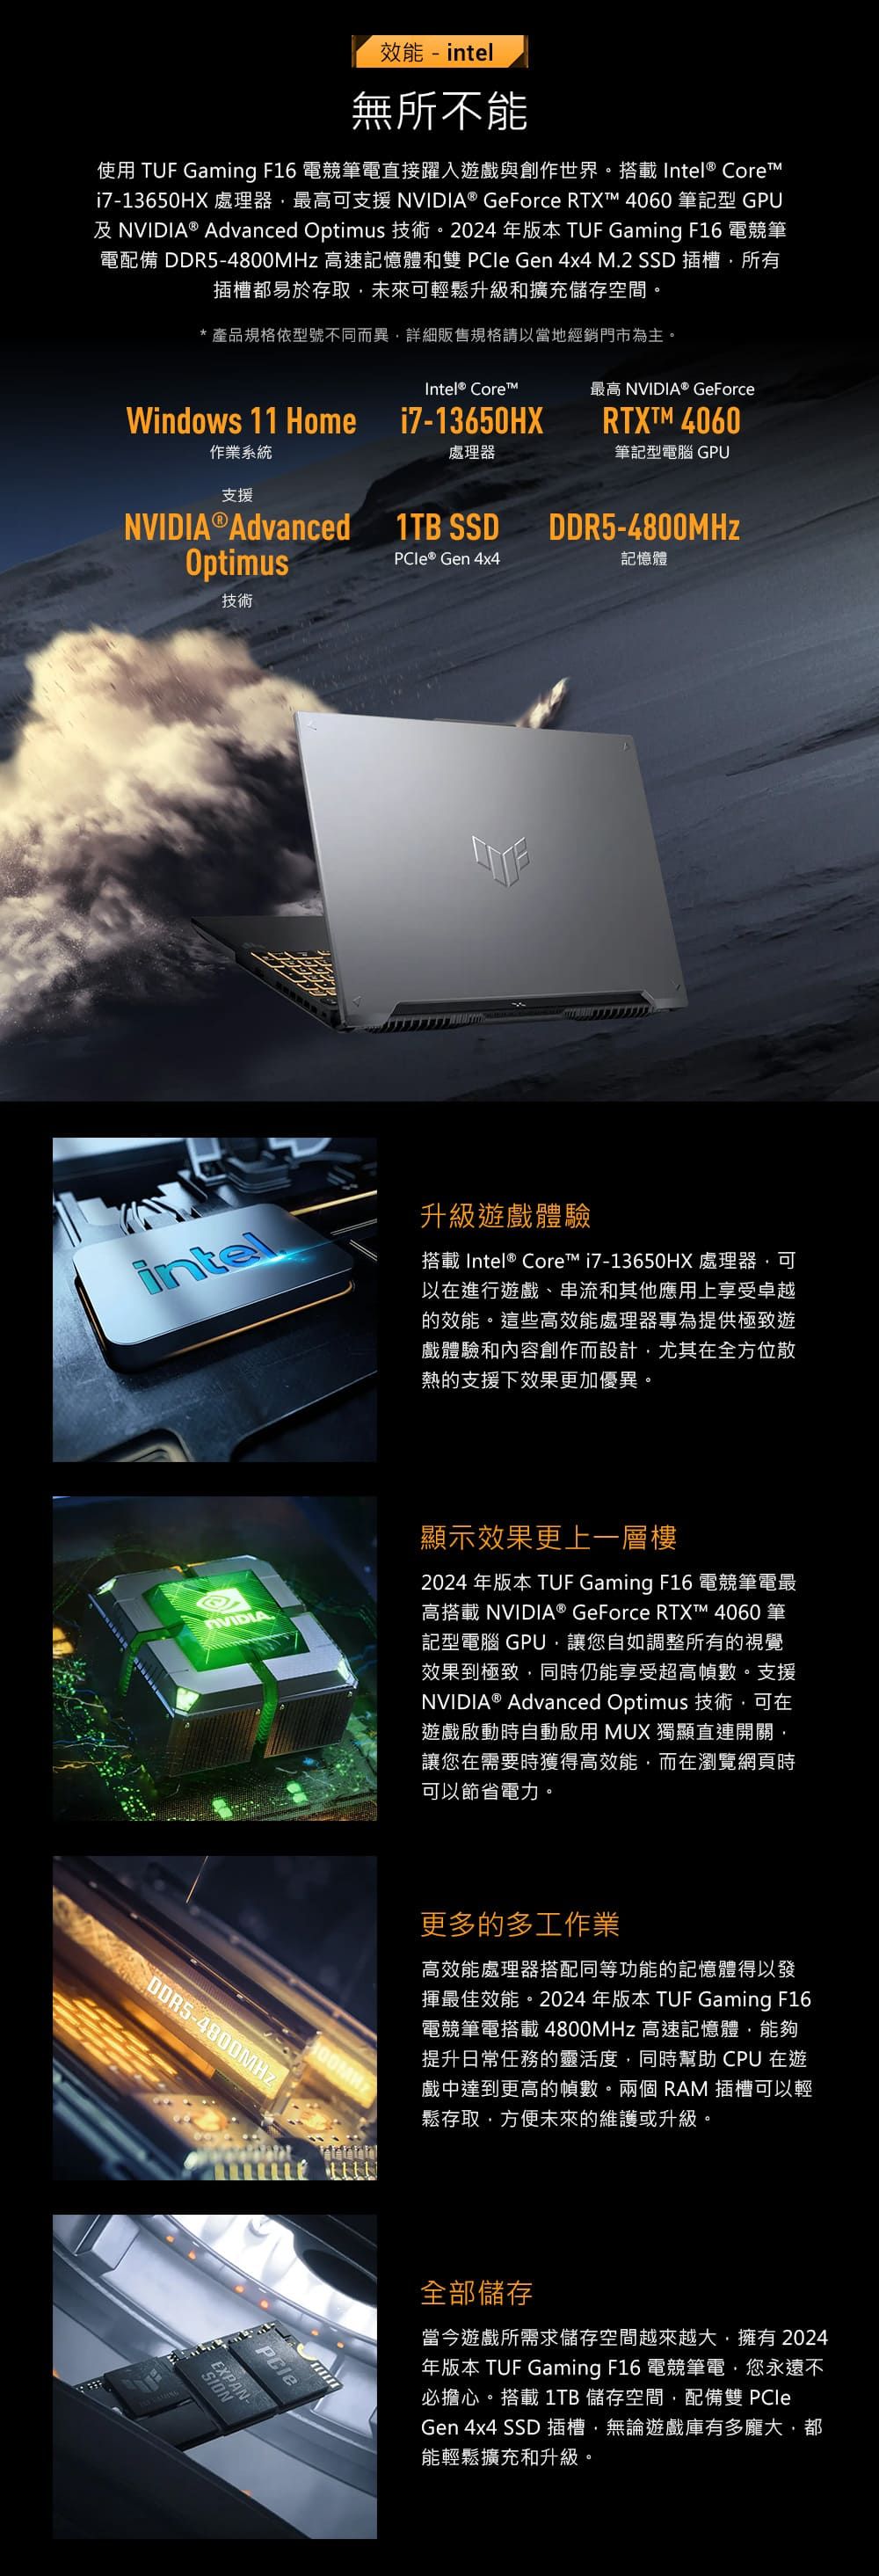 效能 - intel無所不能使用 TUF Gaming F16 電競筆電直接躍入遊戲與創作世界搭載 Intel® Corei7-13650HX 處理器最高可支援 NVIDIA® GeForce RTXT 4060 筆記型 GPU及NVIDIA® Advanced Optimus 技術。2024年版本 TUF Gaming F16 電競筆電配備 DDR5-4800MHz 高速記憶體和雙  Gen 4x4 M.2 SSD 插槽所有插槽都易於存取未來可輕鬆升級和擴充儲存空間。*產品規格依型號不同而異詳細販售規格請以當地經銷門市為主。Intel® Core最高 NVIDIA® GeForcei7-13650HXRTXTM 4060處理器筆記型電腦 GPUWindows 11 Home作業系統支援NVIDIA®Advanced 1TB SSDDDR5-4800MHzOptimusPCIe® Gen 4x4記憶體技術intel升級遊戲體驗搭載Intel® Core™ i7-13650HX 處理器可以在進行遊戲、串流和其他應用上享受卓越的效能。這些高效能處理器專為提供極致遊戲體驗和內容創作而設計尤其在全方位散熱的支援下效果更加優異。顯示效果更上一層樓2024 年版本 TUF Gaming F16 電競筆電最高搭載 NVIDIA® GeForce RTXT™ 4060 筆記型電腦 GPU讓您自如調整所有的視覺效果到極致同時仍能享受超高幀數。支援NVIDIA® Advanced Optimus 技術可在遊戲啟動時自動啟用 MUX 獨顯直連開關讓您在需要時獲得高效能而在瀏覽網頁時可以節省電力。PCleEXPAN-NOIS更多的多工作業高效能處理器搭配同等功能的記憶體得以發揮最佳效能。2024年版本 TUF Gaming F16電競筆電搭載4800MHz 高速記憶體,能夠提升日常任務的靈活度,同時幫助 CPU 在遊戲中達到更高的幀數。兩個RAM 插槽可以輕鬆存取,方便未來的維護或升級。全部儲存當今遊戲所需求儲存空間越來越大,擁有2024年版本 TUF Gaming F16 電競筆電,您永遠不必擔心。搭載1TB 儲存空間,配備雙 PCleGen 4x4 SSD 插槽,無論遊戲庫有多龐大,都能輕鬆擴充和升級。